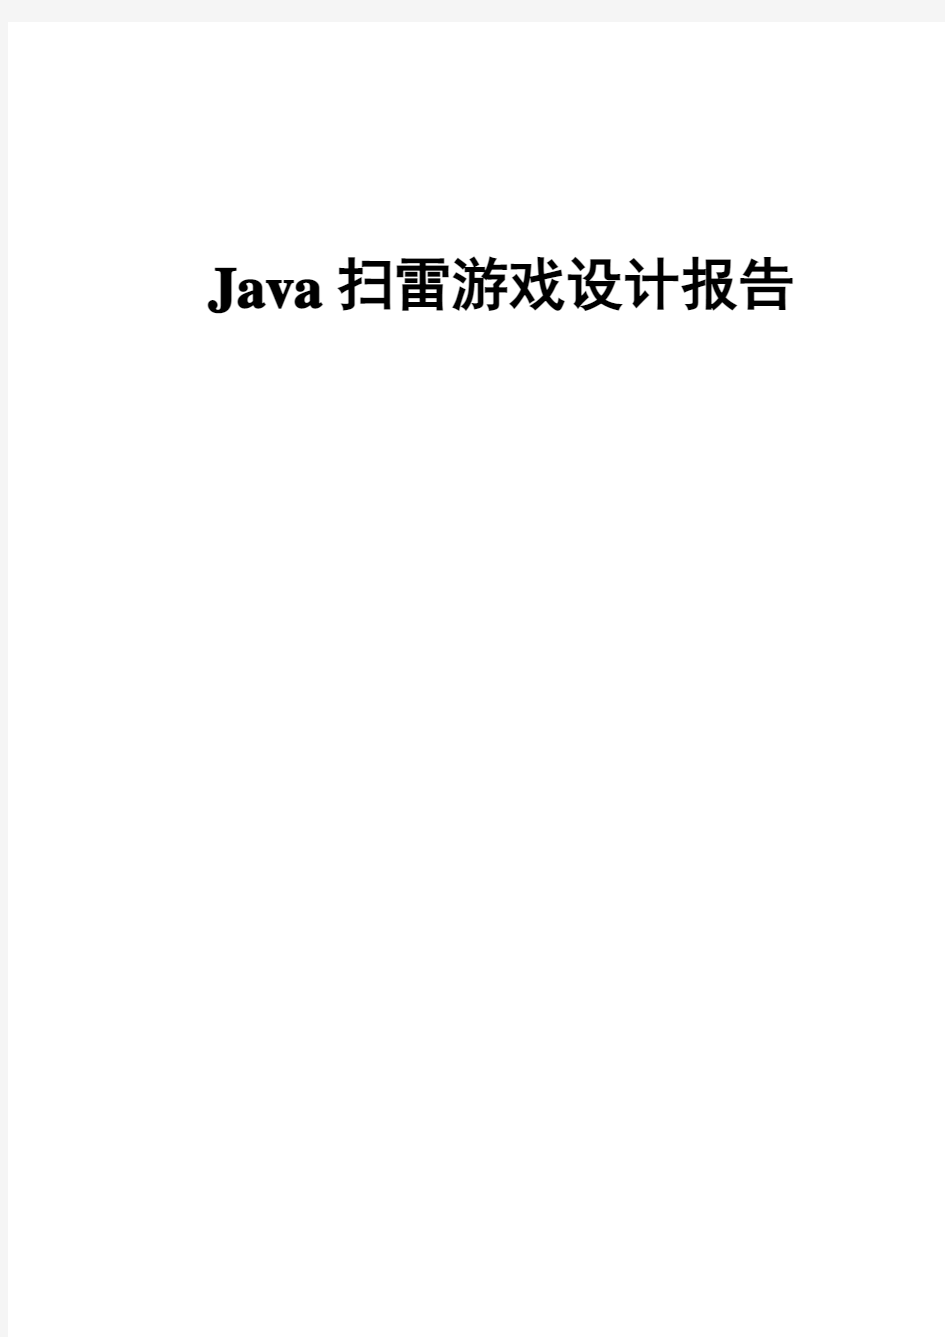 Java课程设计扫雷小游戏